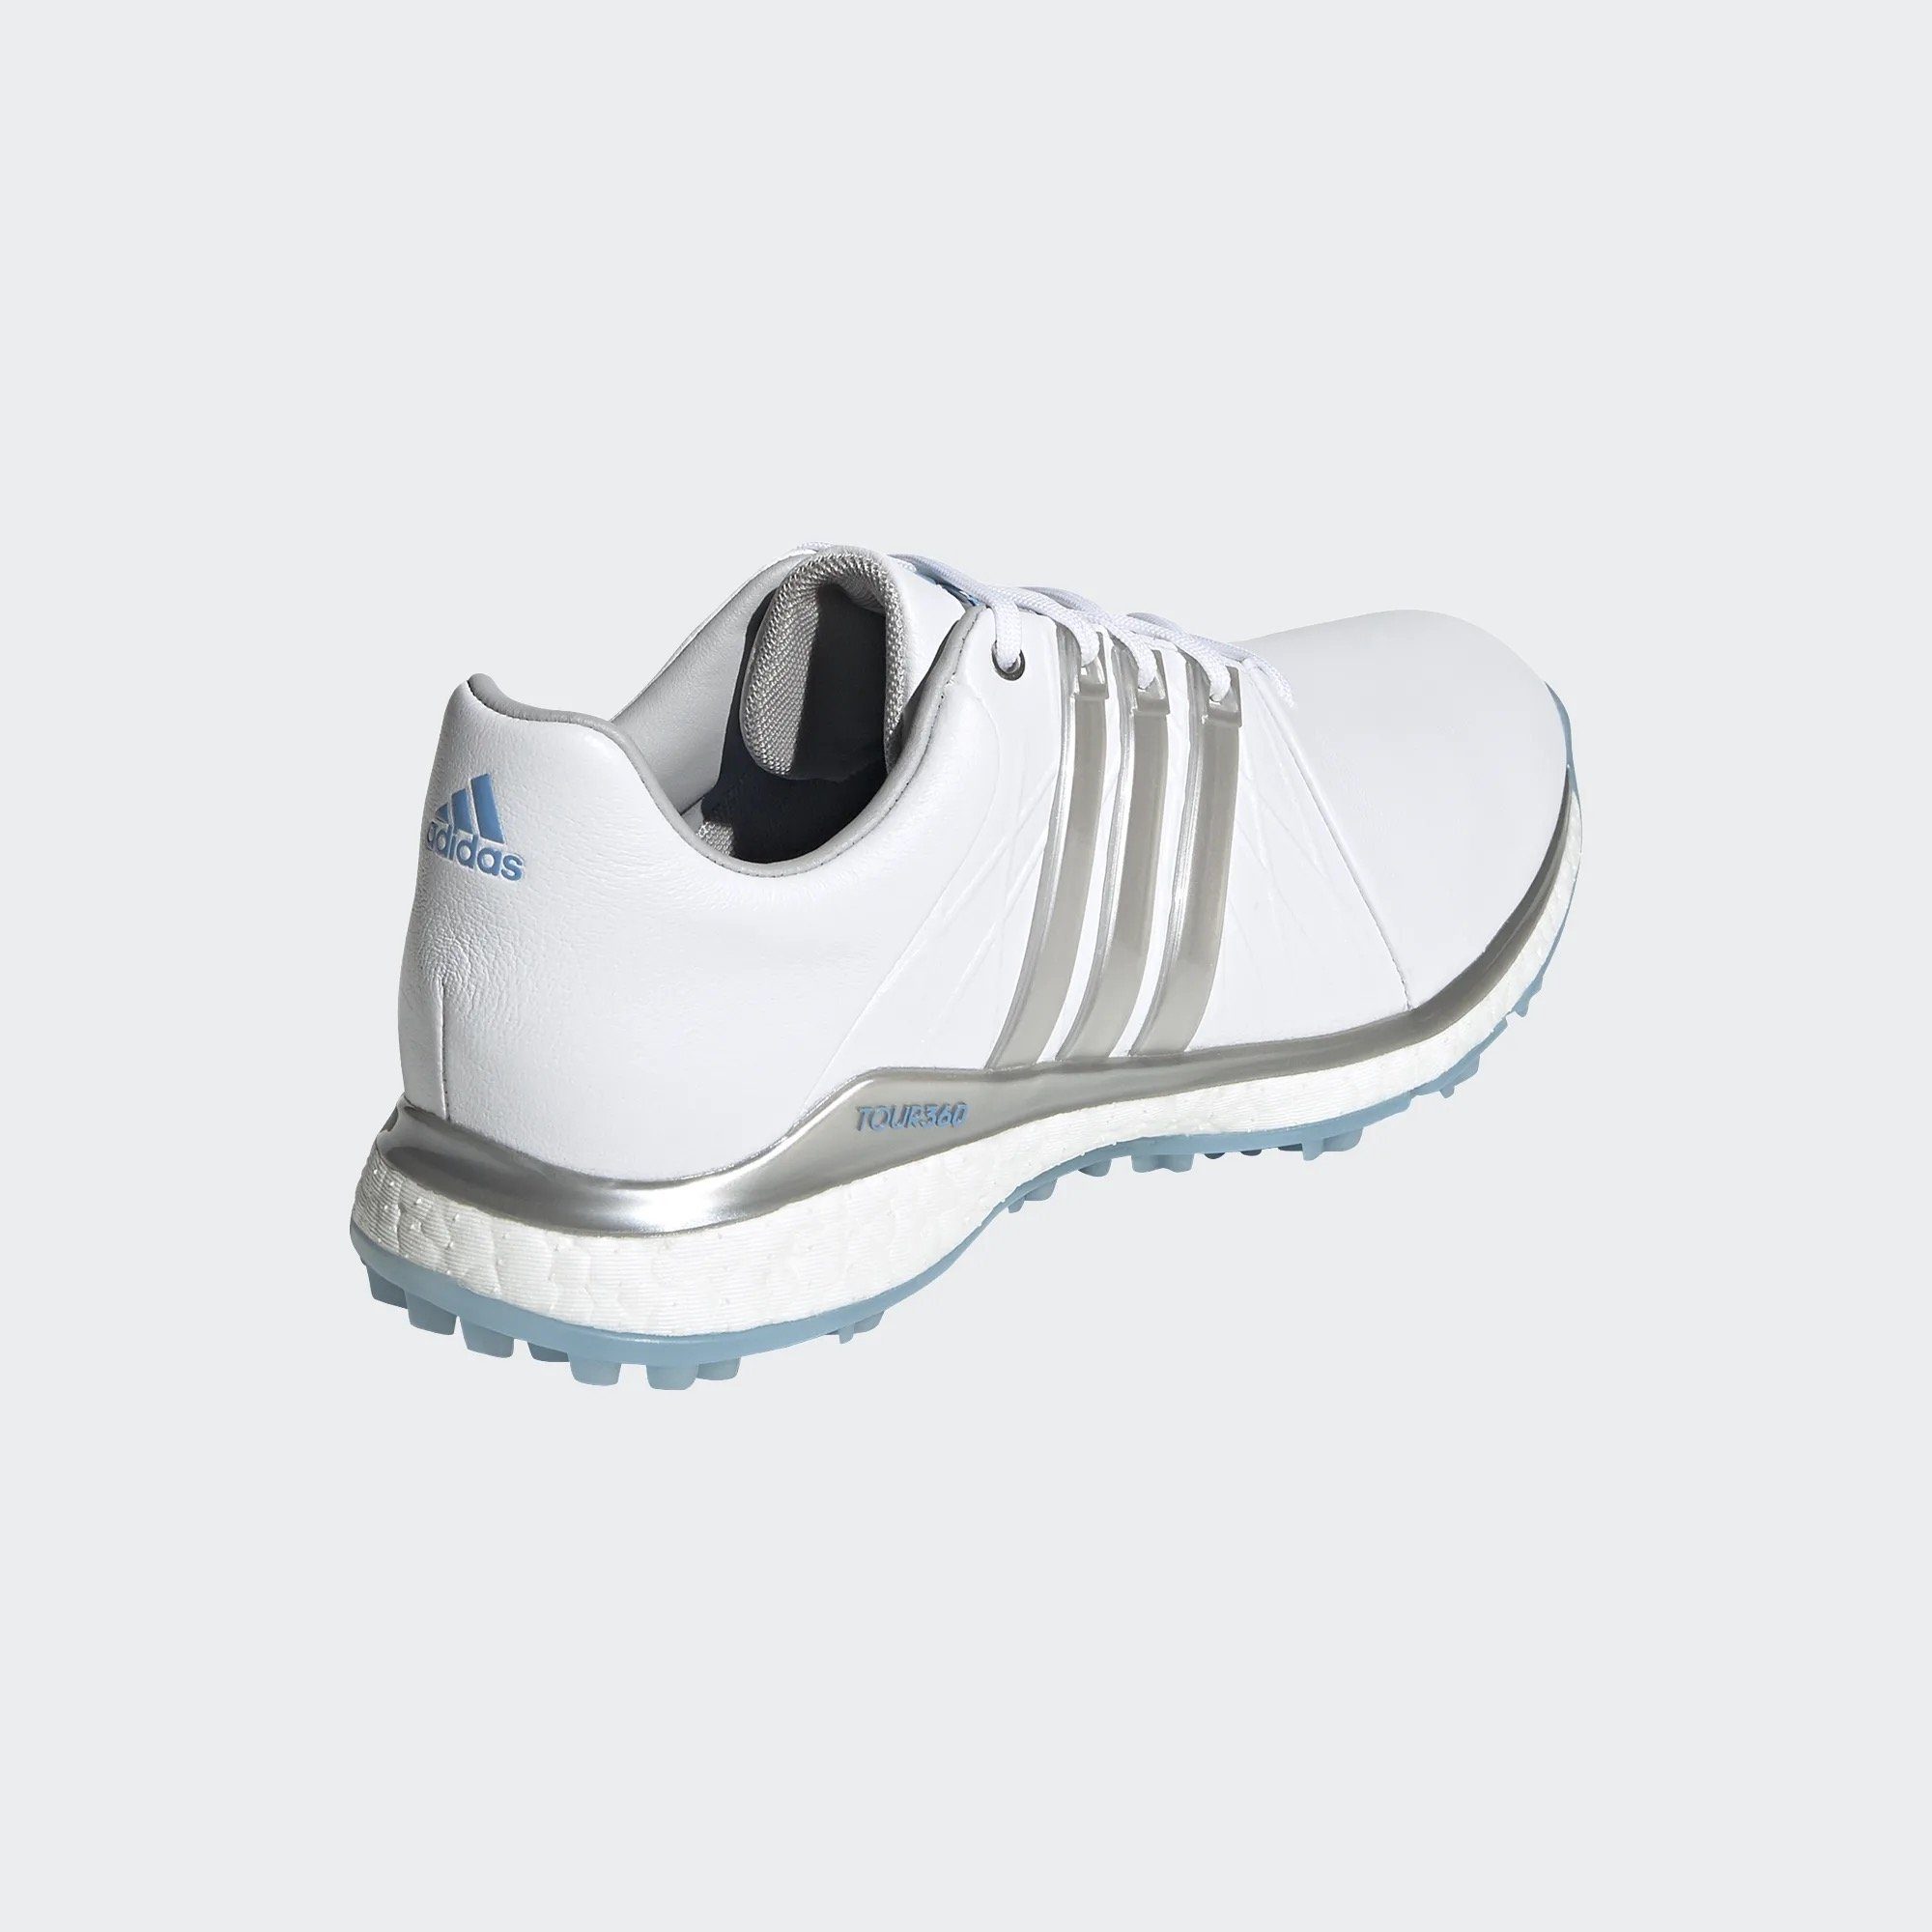 Adidas Golfschuh XT-SL Torsion mit Sportswear Damen Zwischensohle Boost Tour360 adidas Bar White/Silver Durchgehende